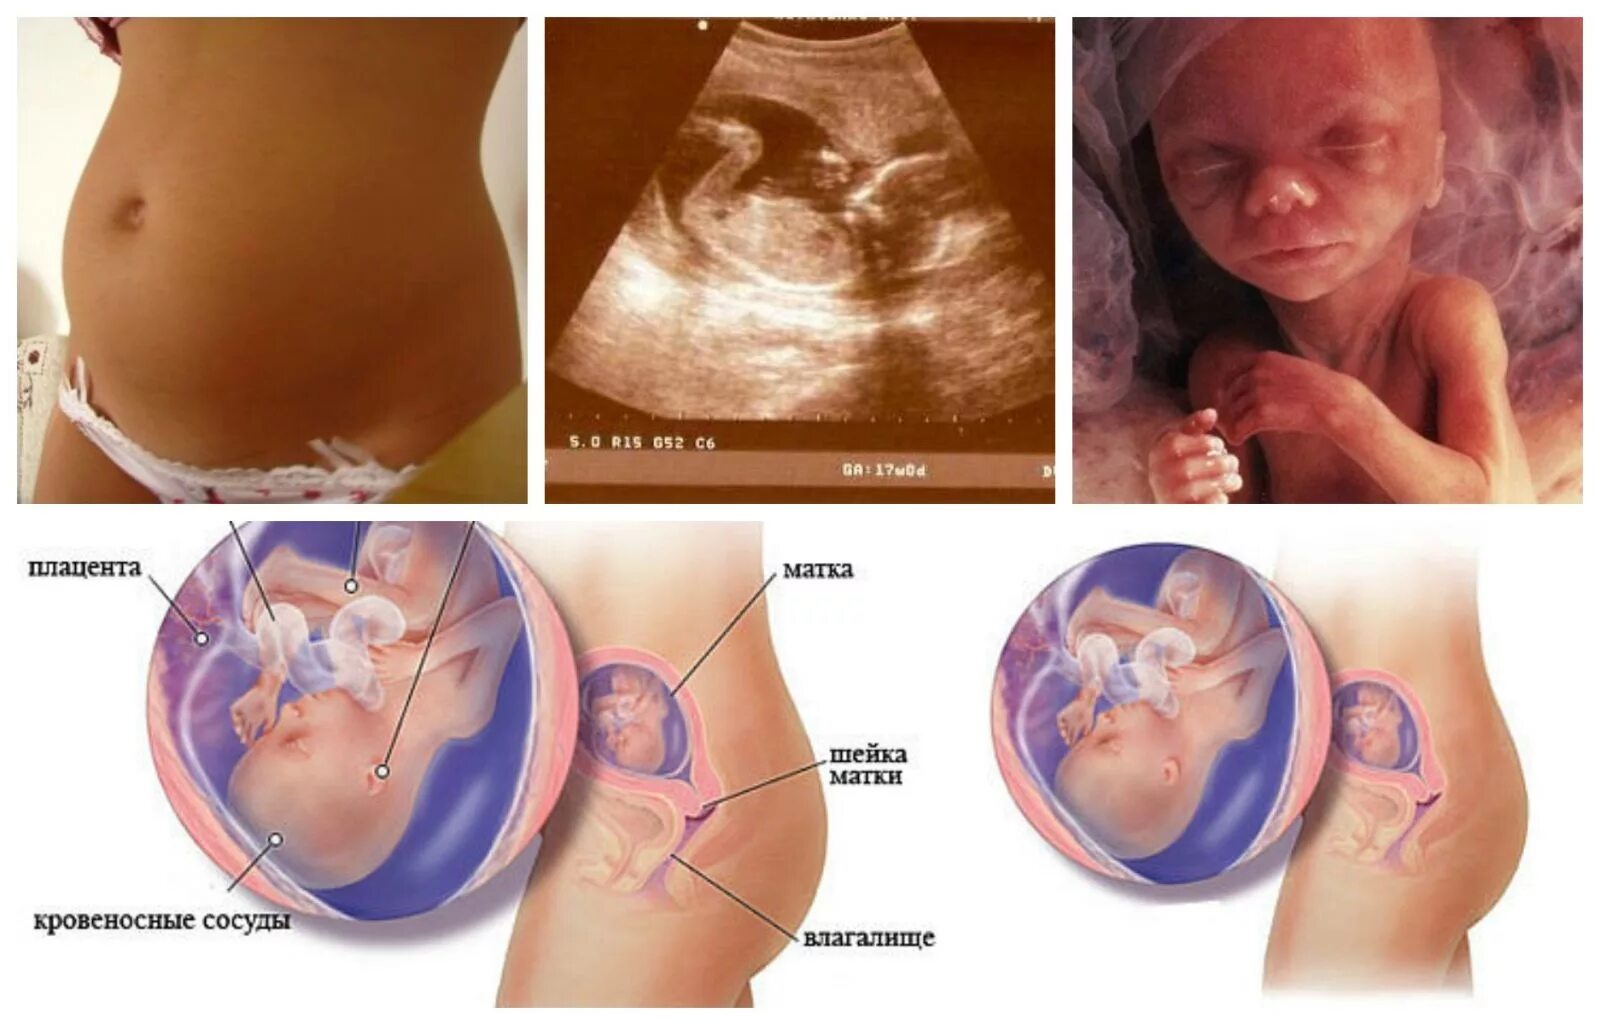 17 недель развитие. Размер малыша на 17 неделе беременности. Ребенок в животе на 17 неделе беременности. Плод ребенка на 17 неделе беременности. 16-17 Недель беременности.